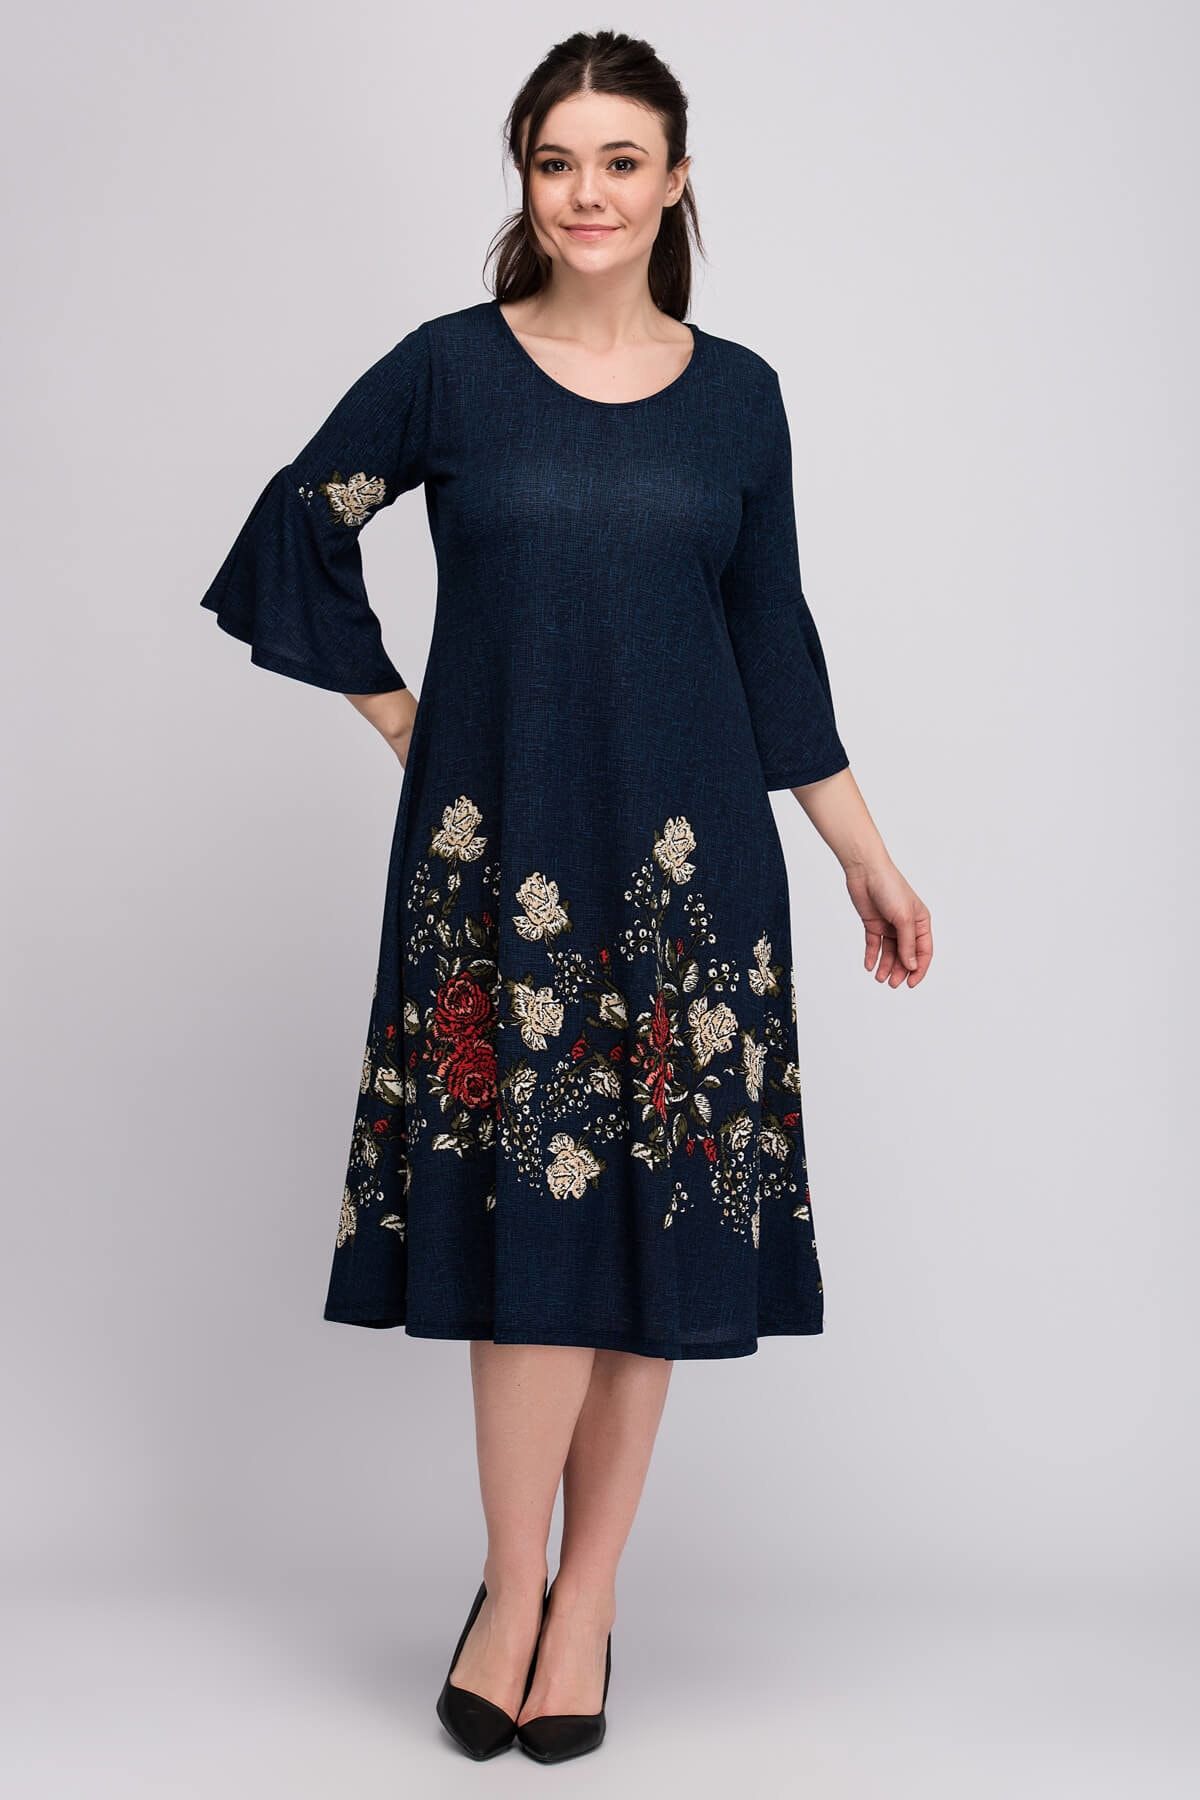 Alesia Kadın Lacivert Çiçek Desenli Krep Elbise BTKS2020-01